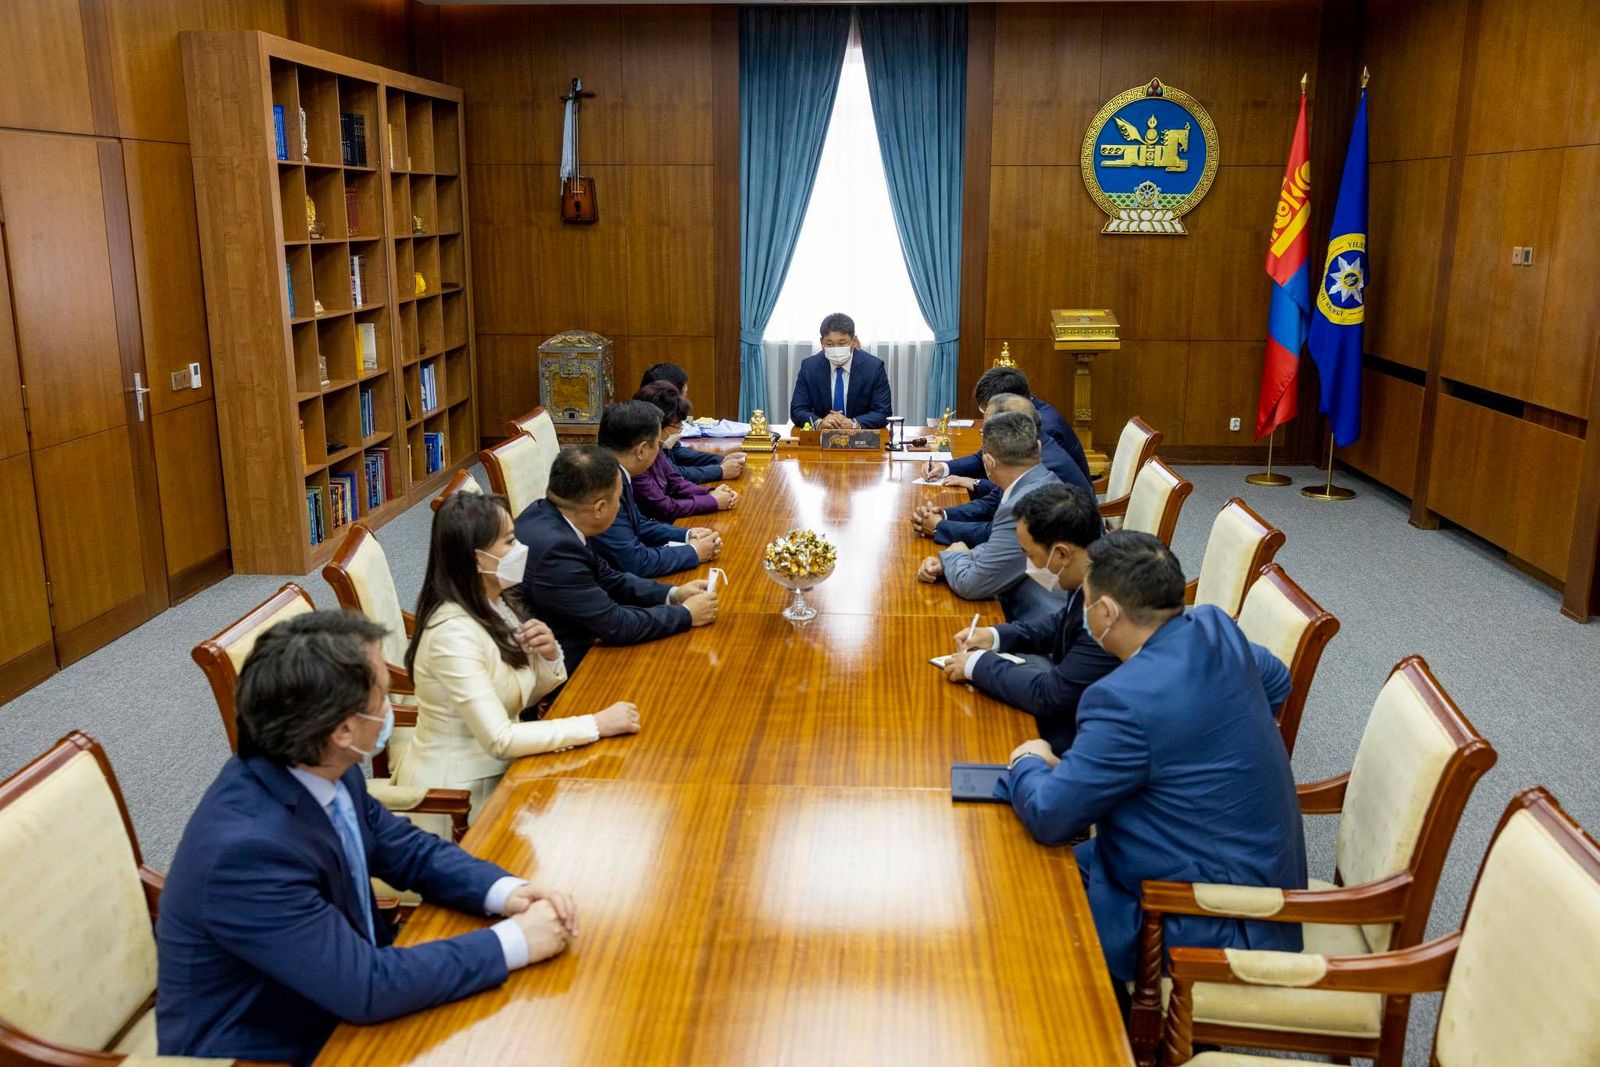 УИХ дахь АН-ын бүлэг Монгол Улсын Ерөнхийлөгчийг дэмжиж, хамтарч ажиллахаа илэрхийллээ